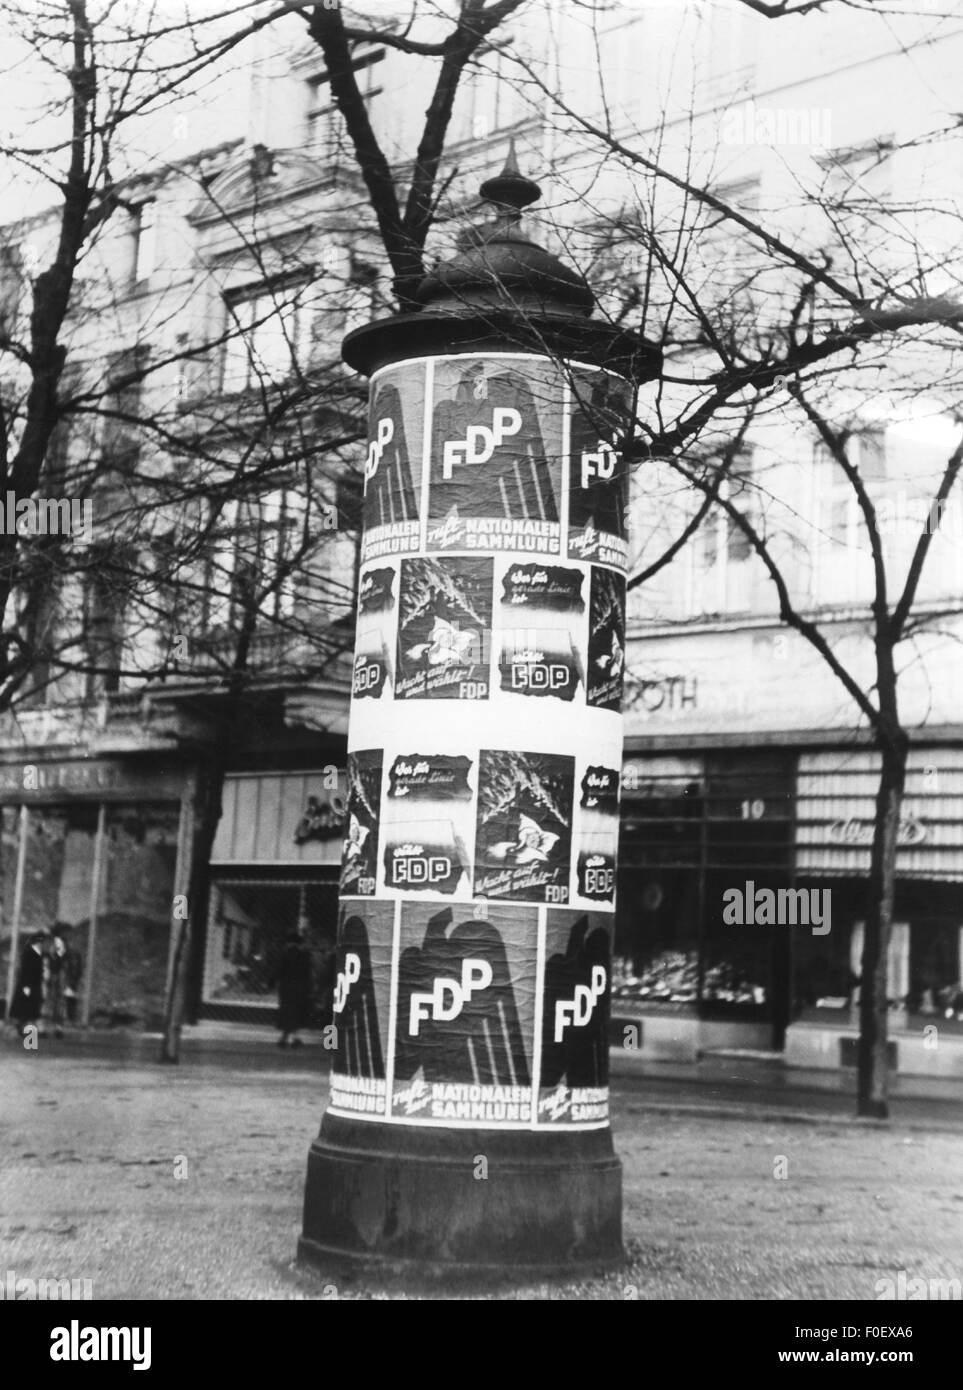 Politica, partiti politici, Partito Liberale democratico (FDP), pilastro pubblicitario con poster elettorale del FDP, elezioni statali, Germania, 1954, diritti aggiuntivi-clearences-non disponibili Foto Stock